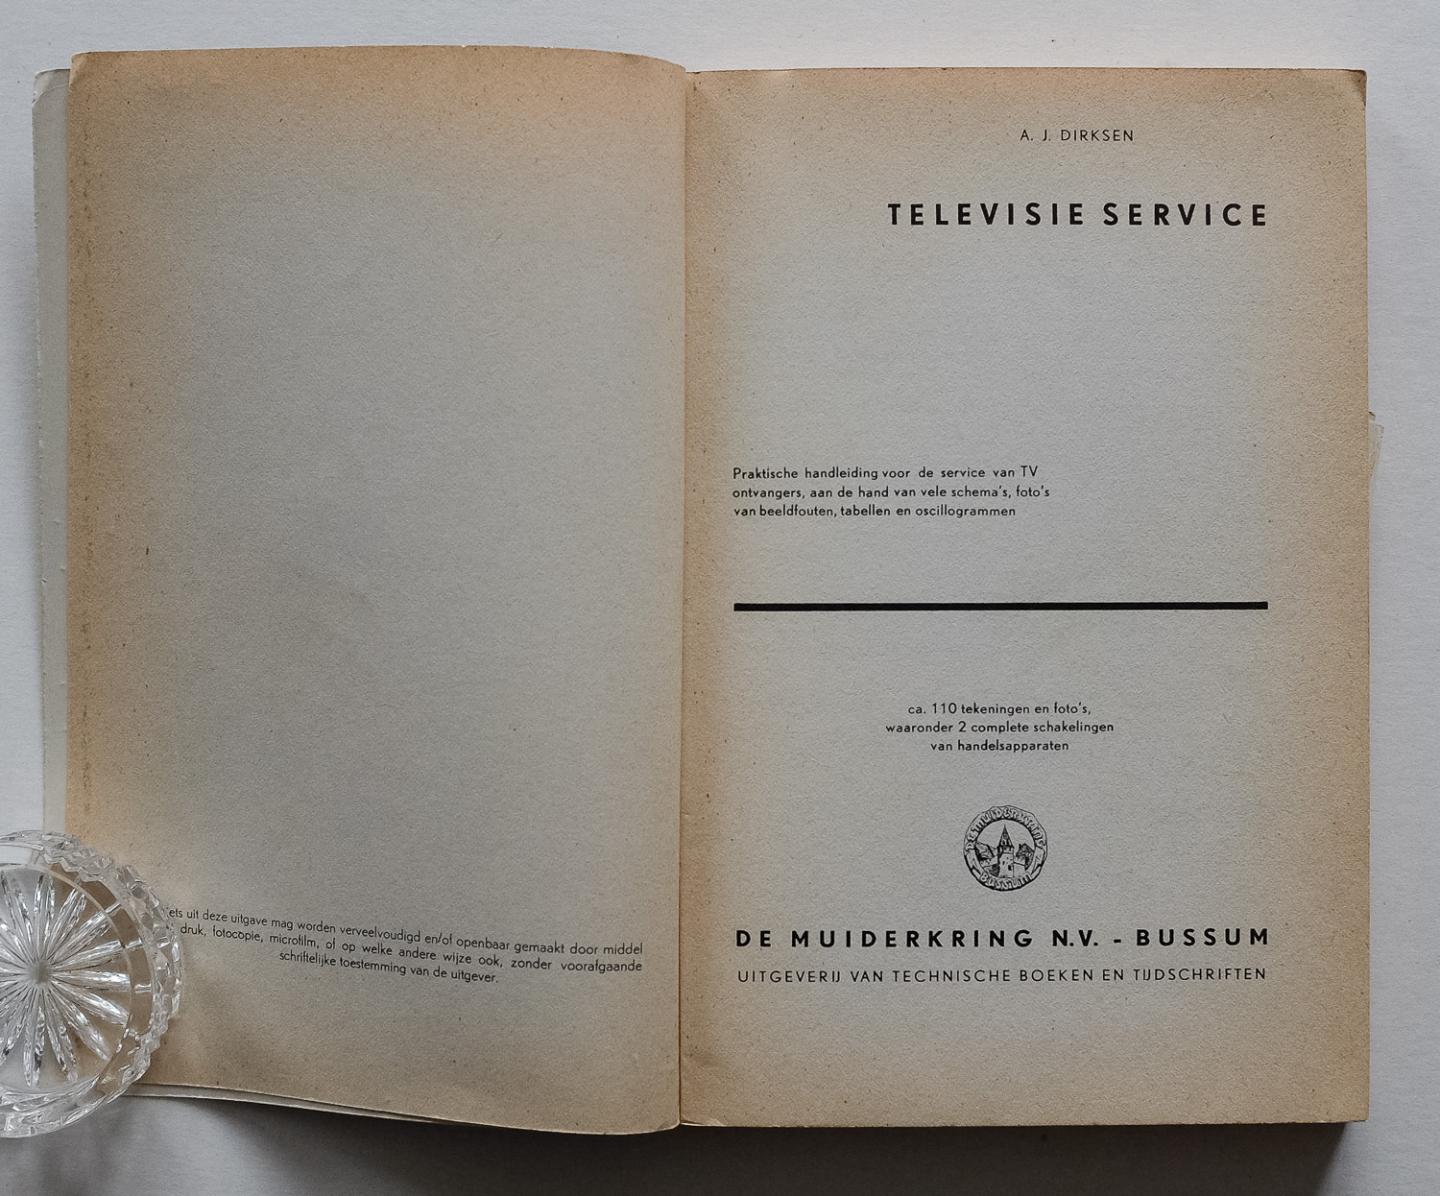 Dirksen, A.J. - Televisie service - praktische handleiding voor de service van TV ontvangers, aan de hand van vele schema's